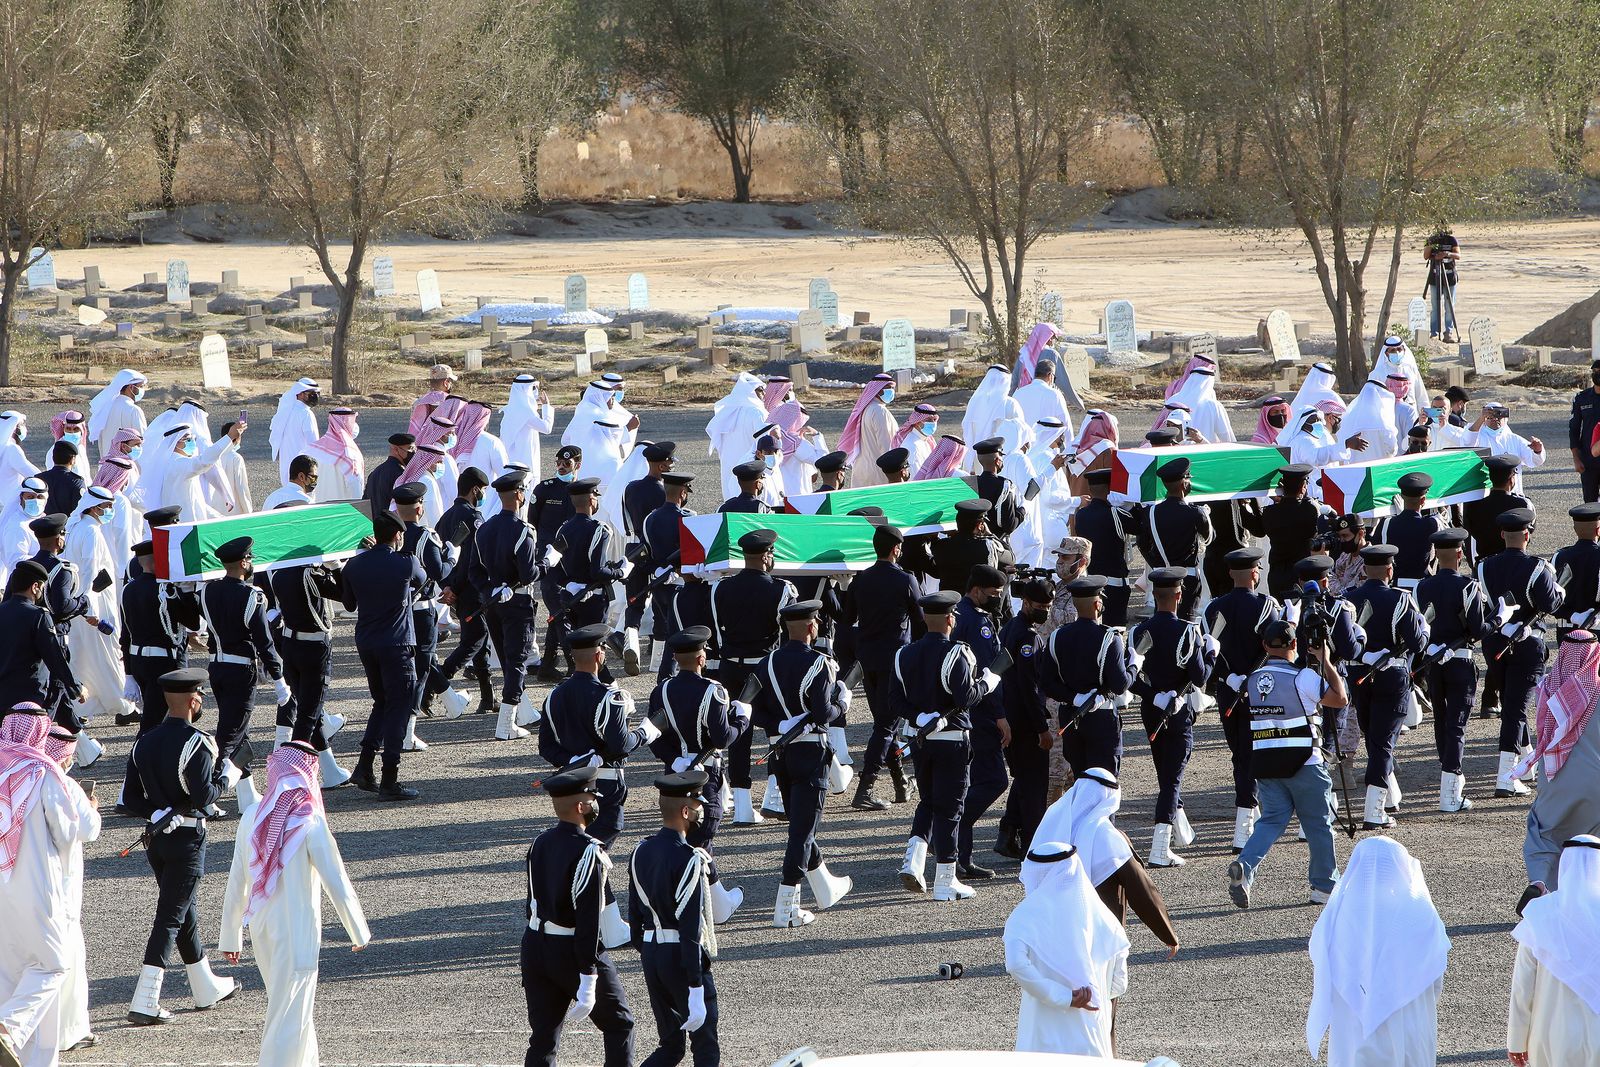 قوات الأمن الكويتية تحمل نعوش 5 أسرى تم العثور على رفاتهم في مقبرة جماعية بالعراق كما تم التعرف عليهم بعد اختبار الحمض النووي - 23 نوفمبر 2020 - AFP